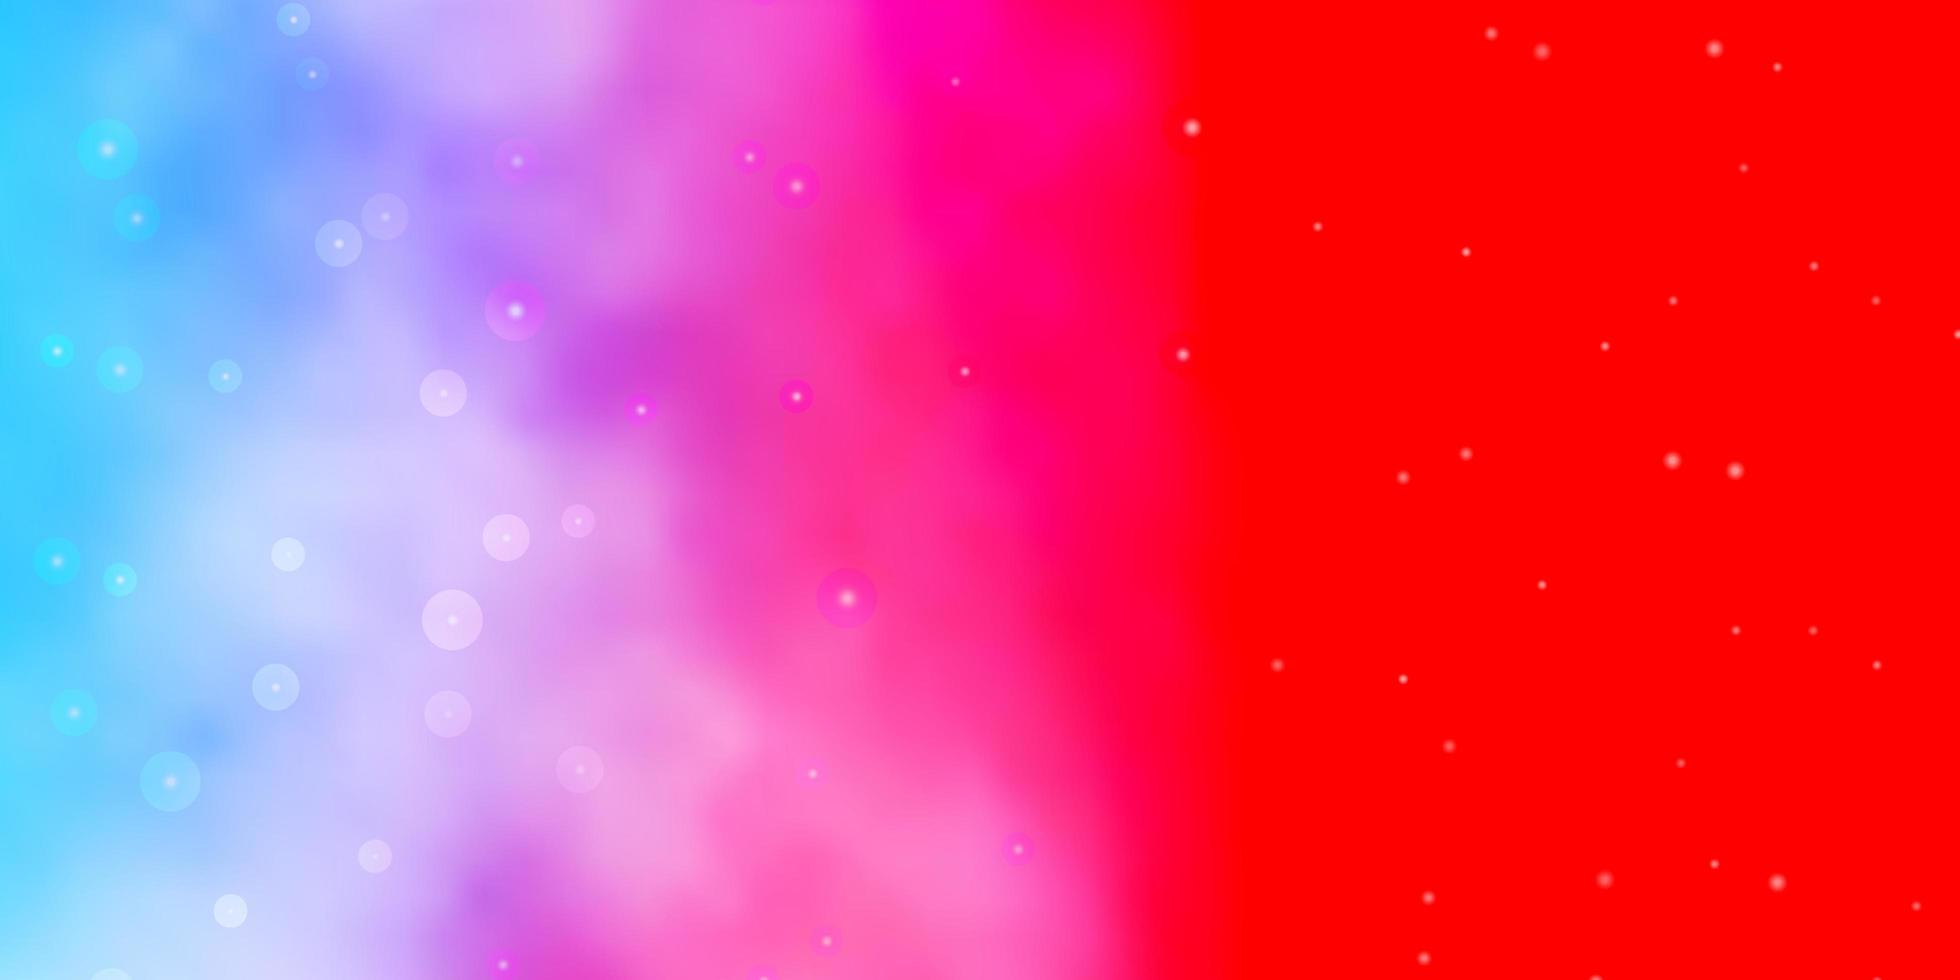 lichtblauw rood vectorsjabloon met neonsterren kleurrijke illustratie met abstract gradiëntsterrenpatroon voor websites bestemmingspagina's vector